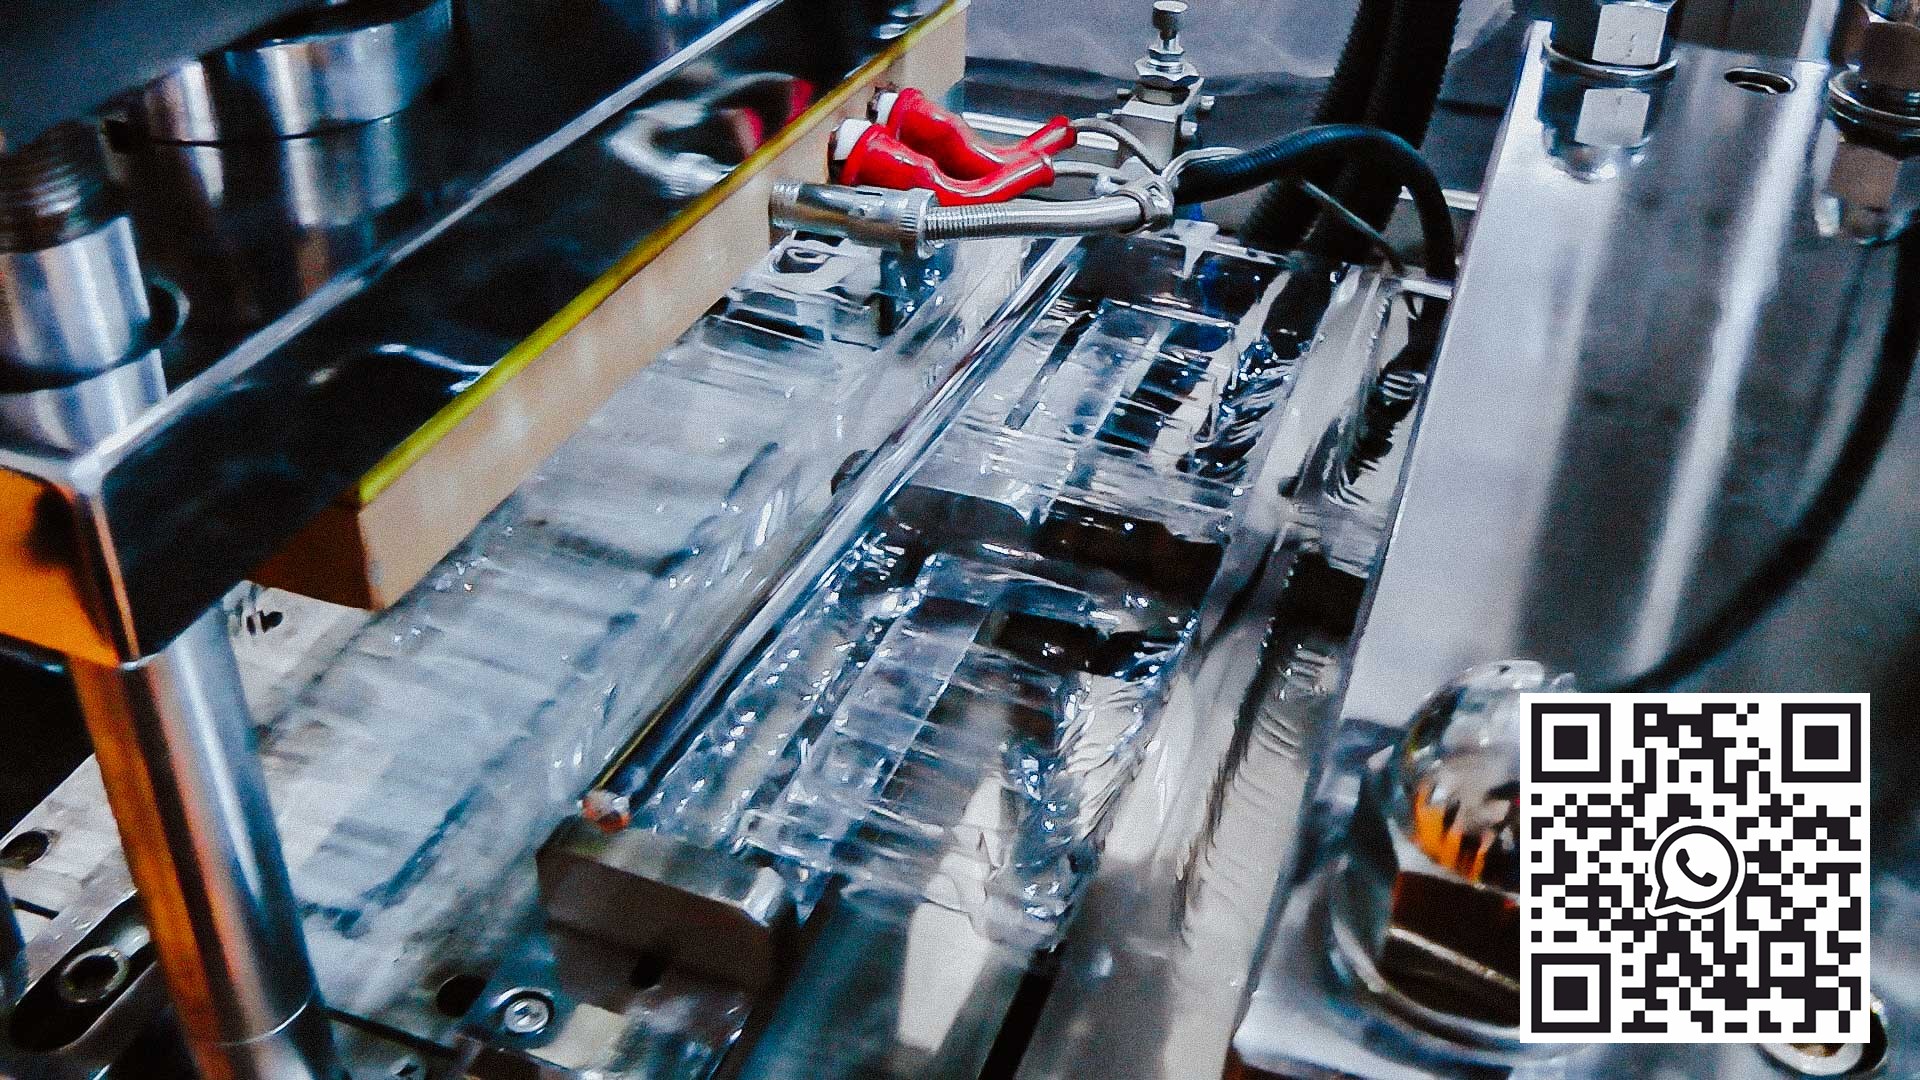 آلة أوتوماتيكية لإنتاج صواني أدوات نفطة corex للأمبولات والقوارير